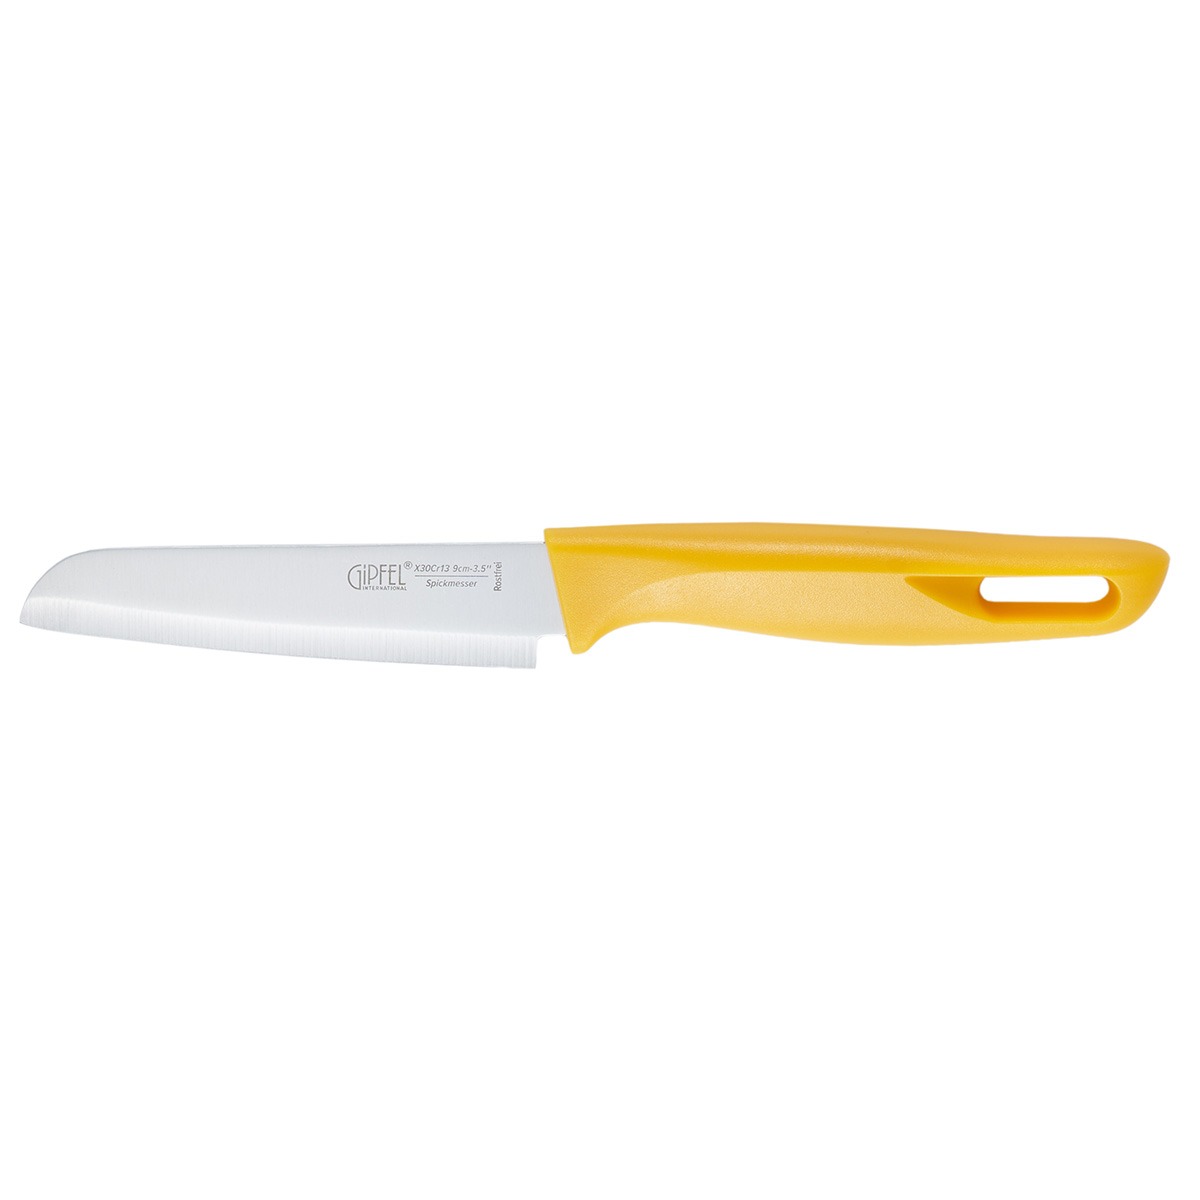 Нож для чистки овощей Gipfel Sorti стальной желтый 9 см - фото 2